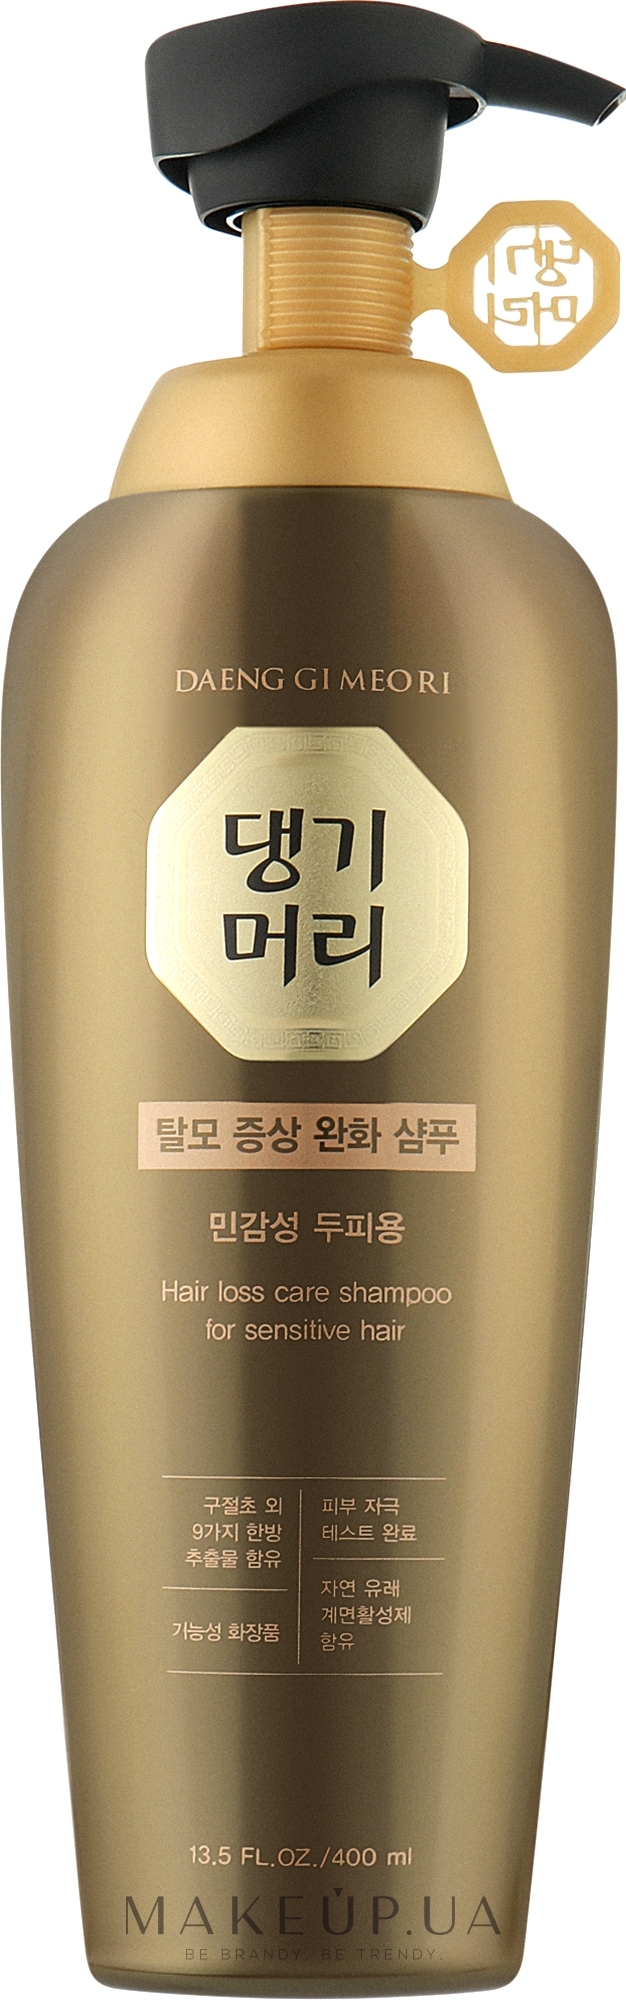 Шампунь проти випадання волосся для чутливої шкіри голови - Daeng Gi Meo Ri Hair Loss Care Shampoo For Sensitive Hair — фото 400ml